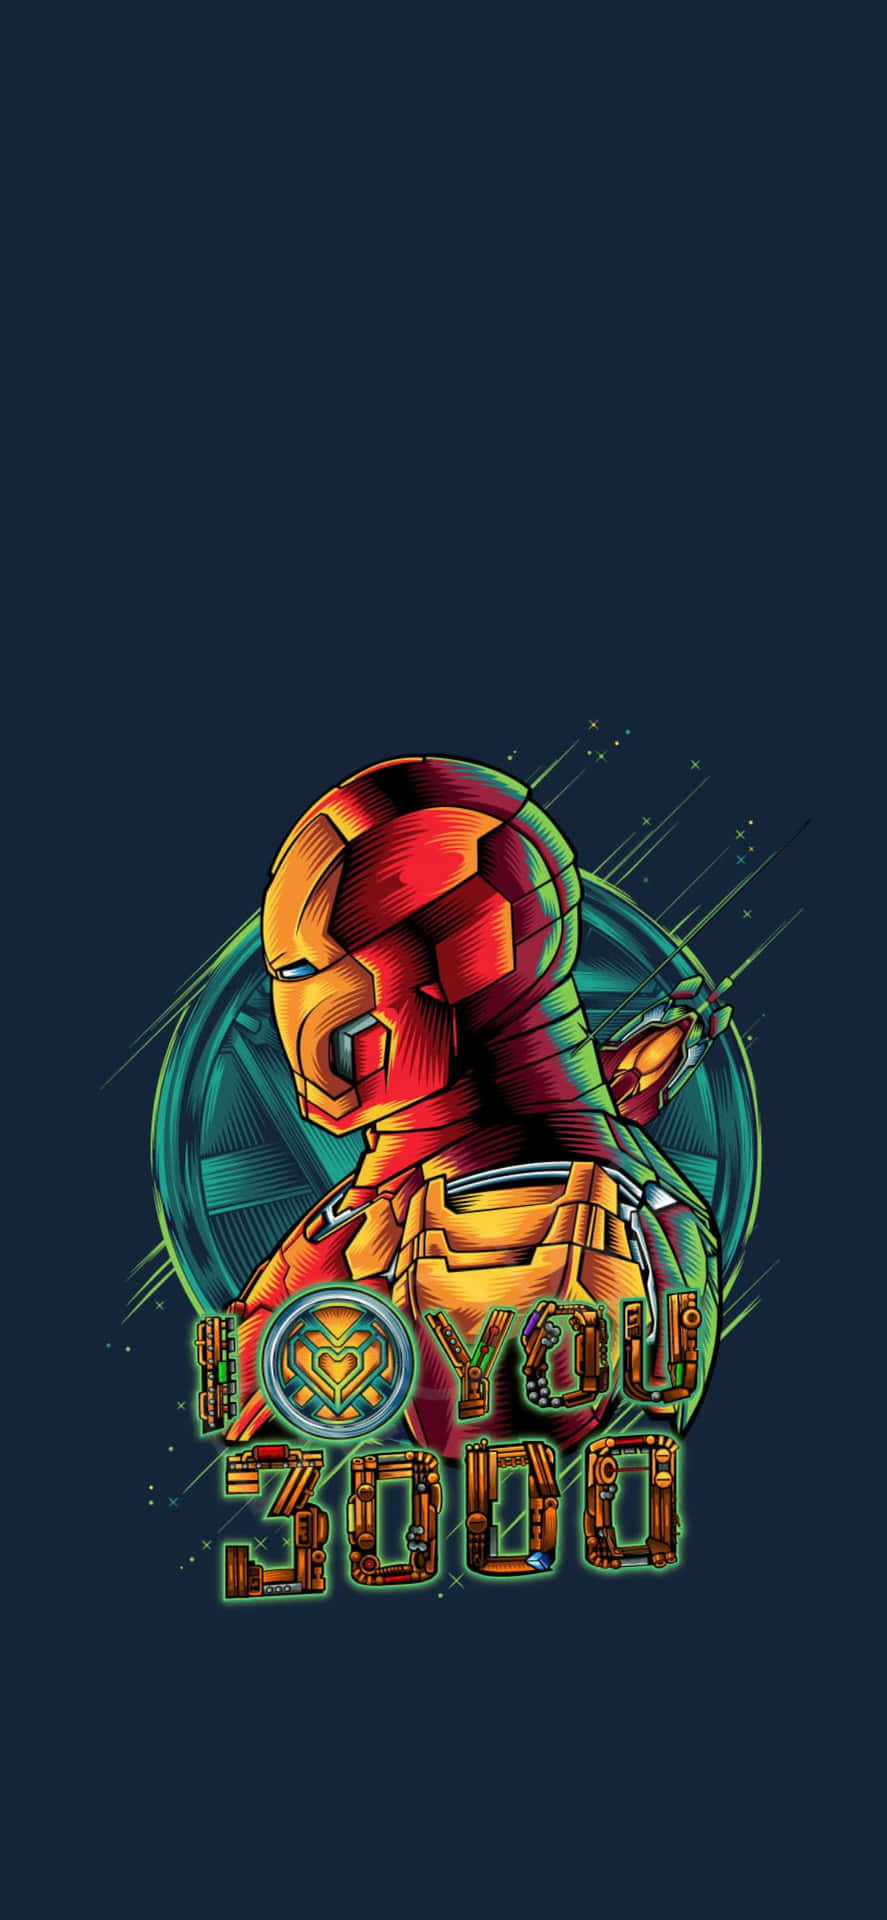 iPhone XS Avengers Background Iron Man I Love You 3000 Fanart